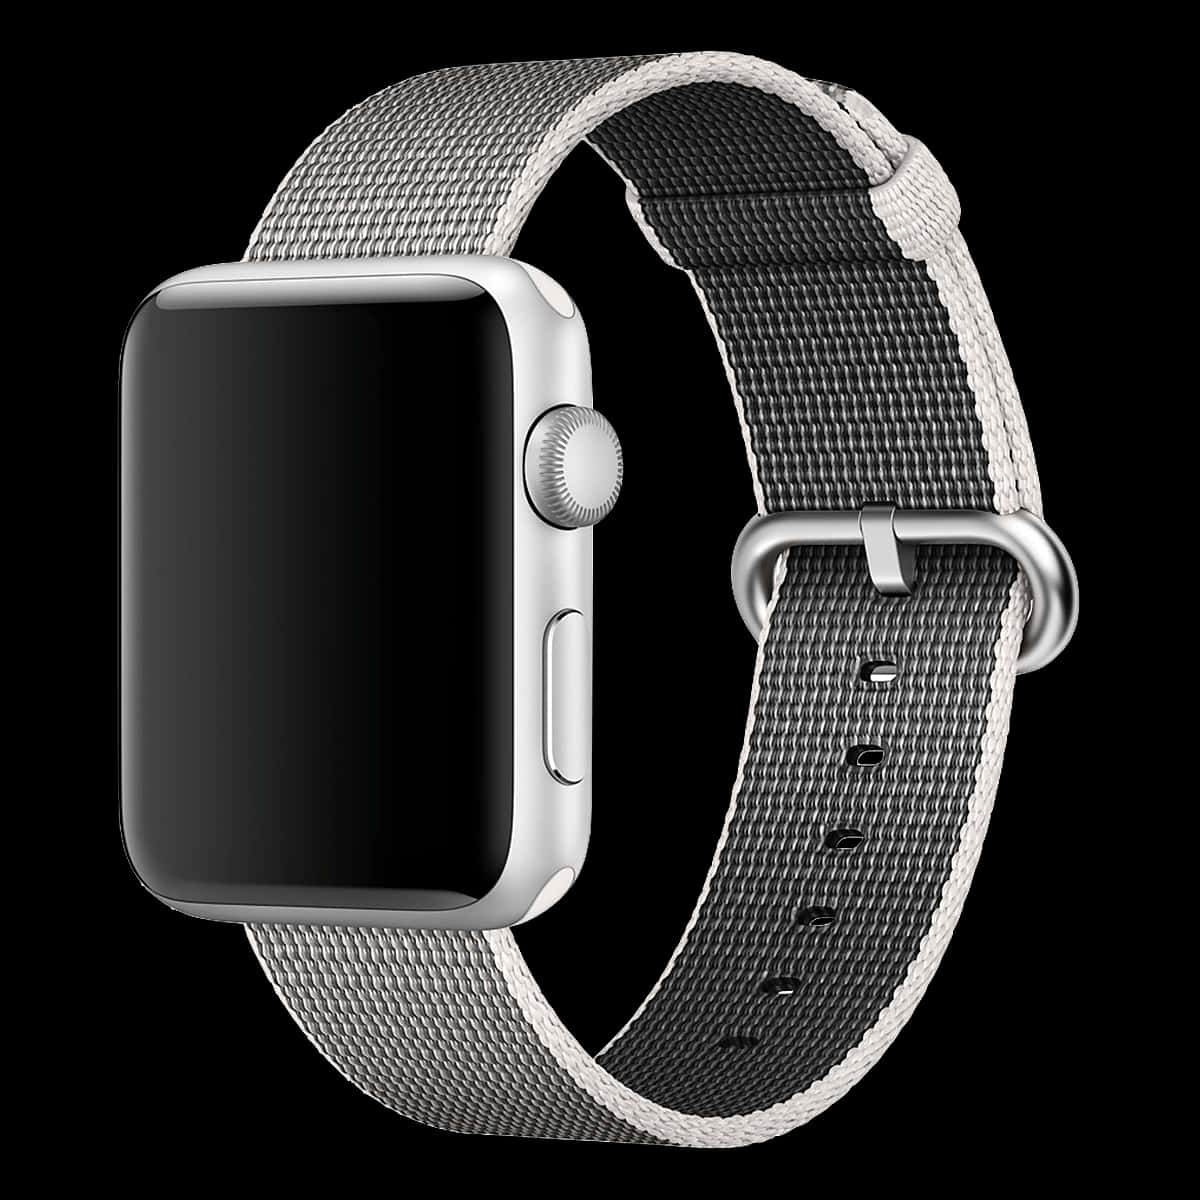 Behaltemit Einer Apple Watch Den Überblick Über Deine Gesundheit Und Aktivitäten.